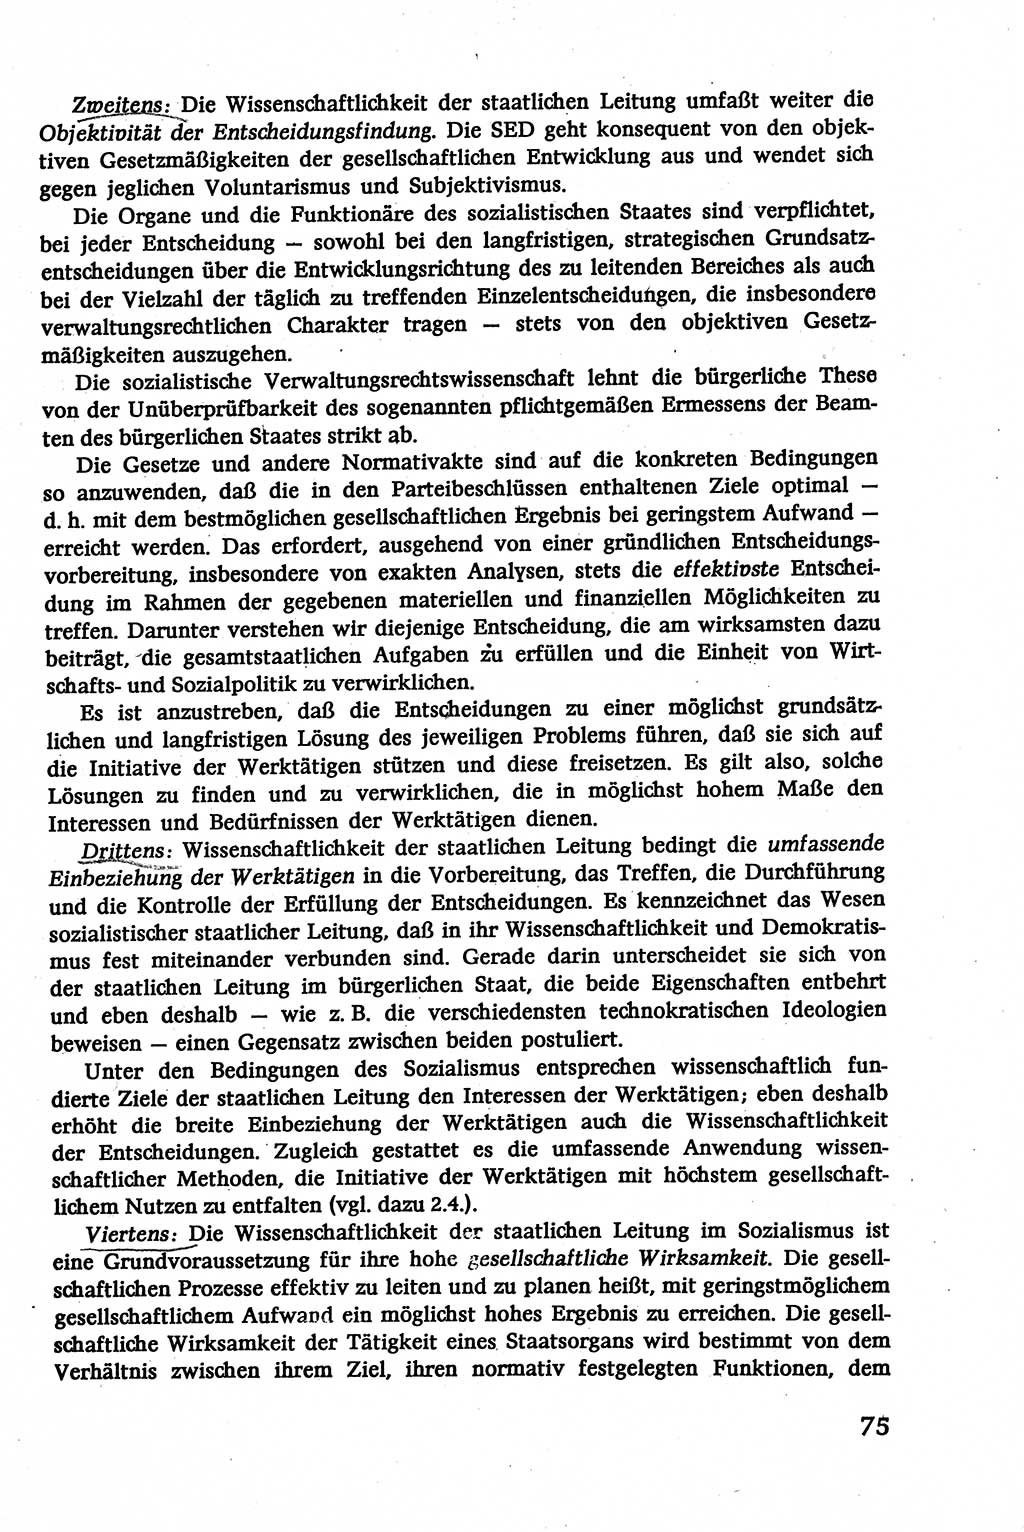 Verwaltungsrecht [Deutsche Demokratische Republik (DDR)], Lehrbuch 1979, Seite 75 (Verw.-R. DDR Lb. 1979, S. 75)